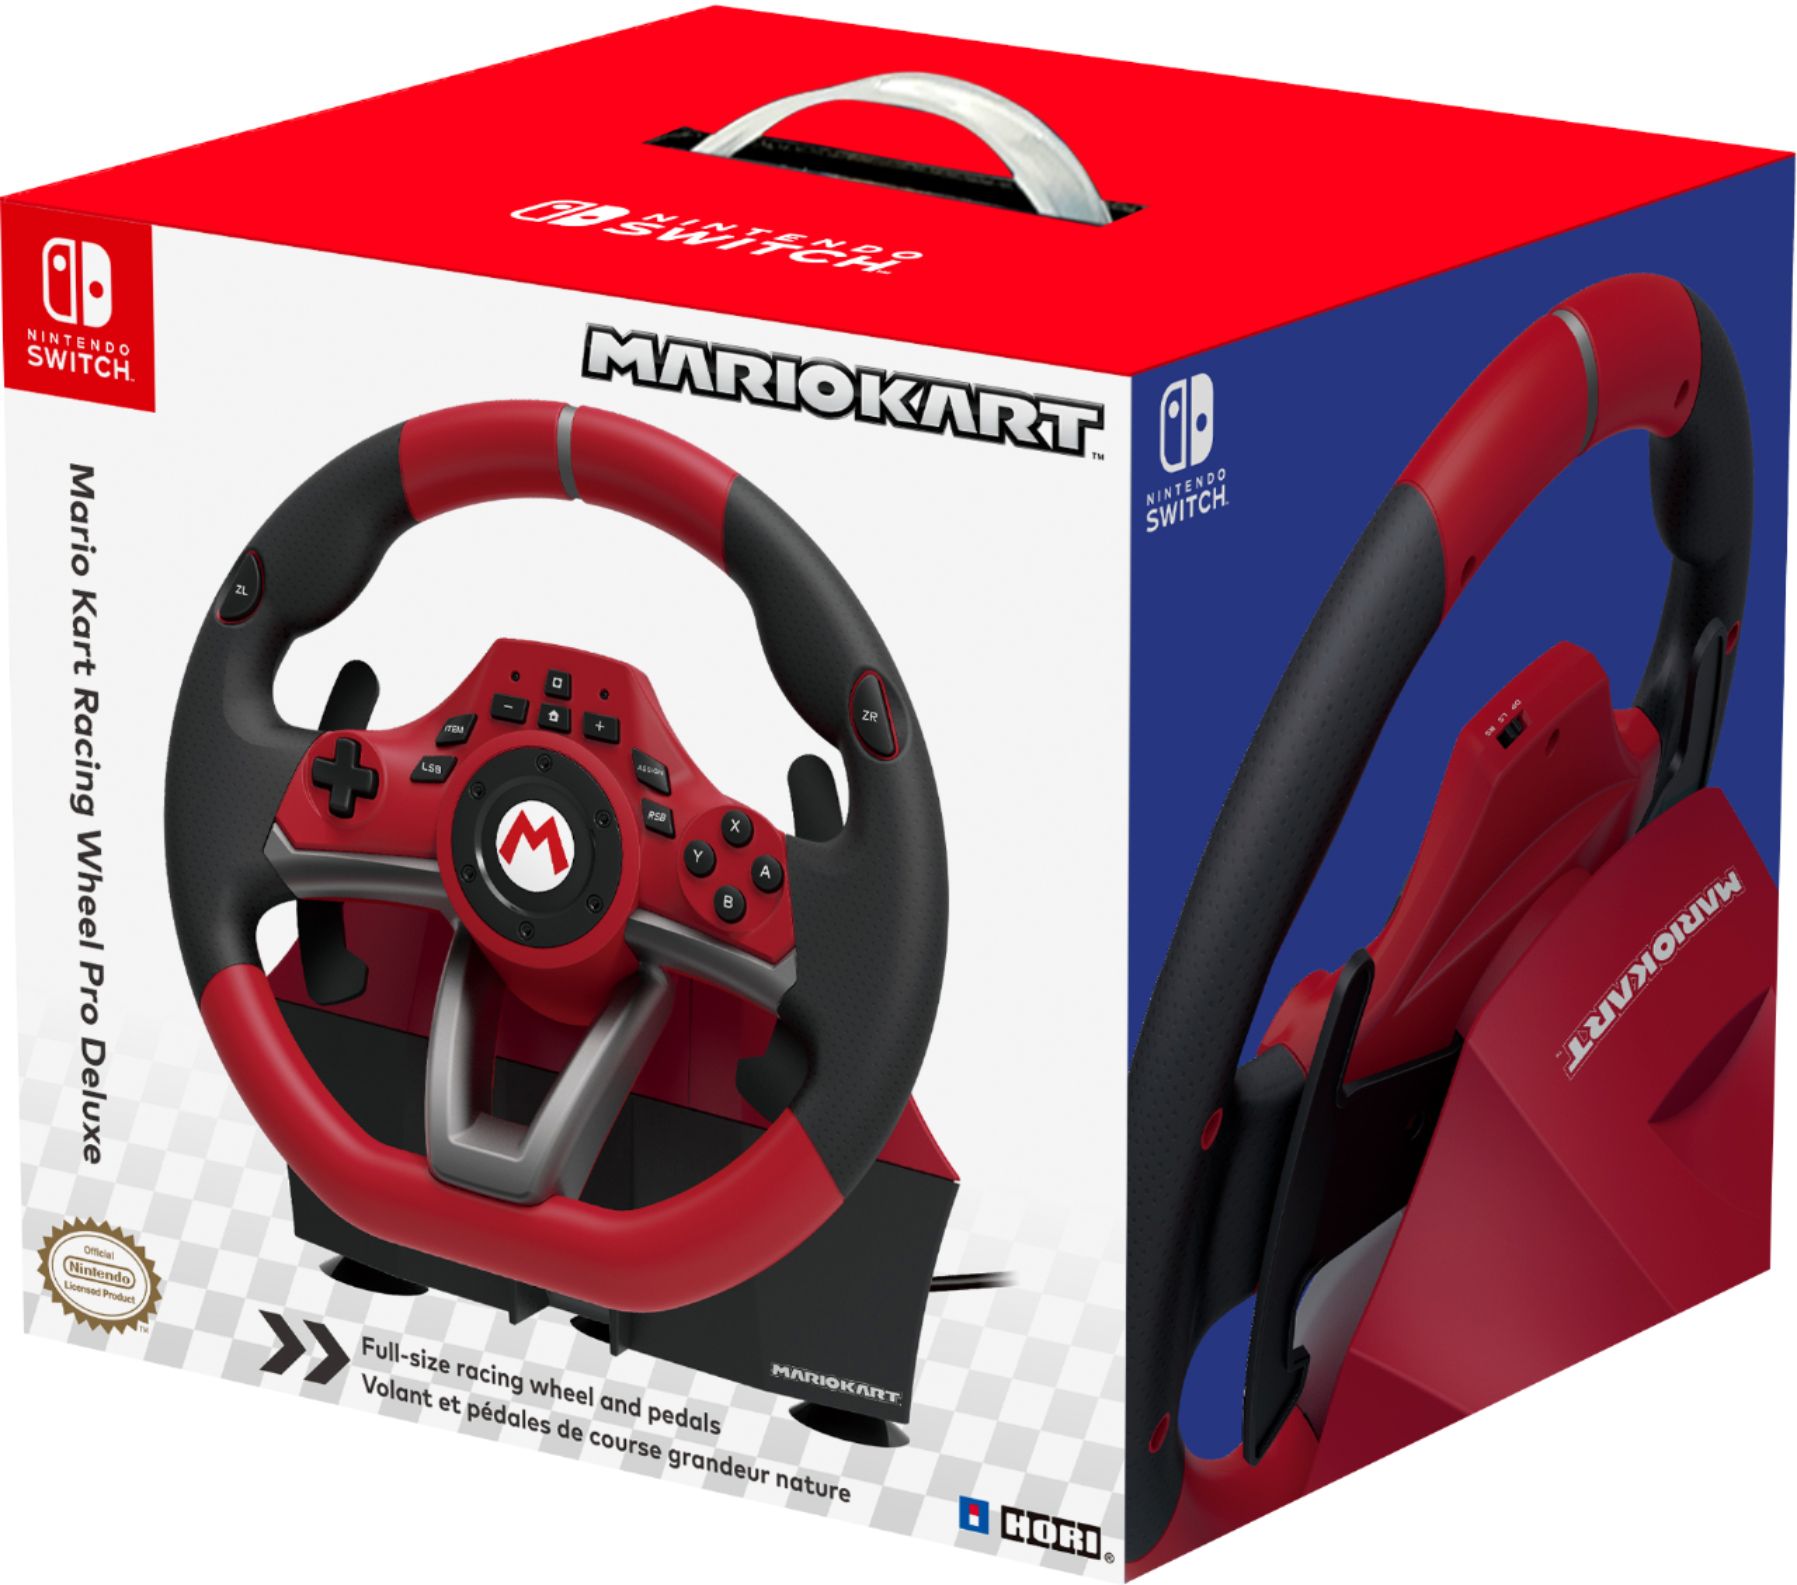 evenwichtig Picasso zoete smaak Hori Mario Kart Racing Pro Deluxe for Nintendo Switch Red NSW-228U - Best  Buy